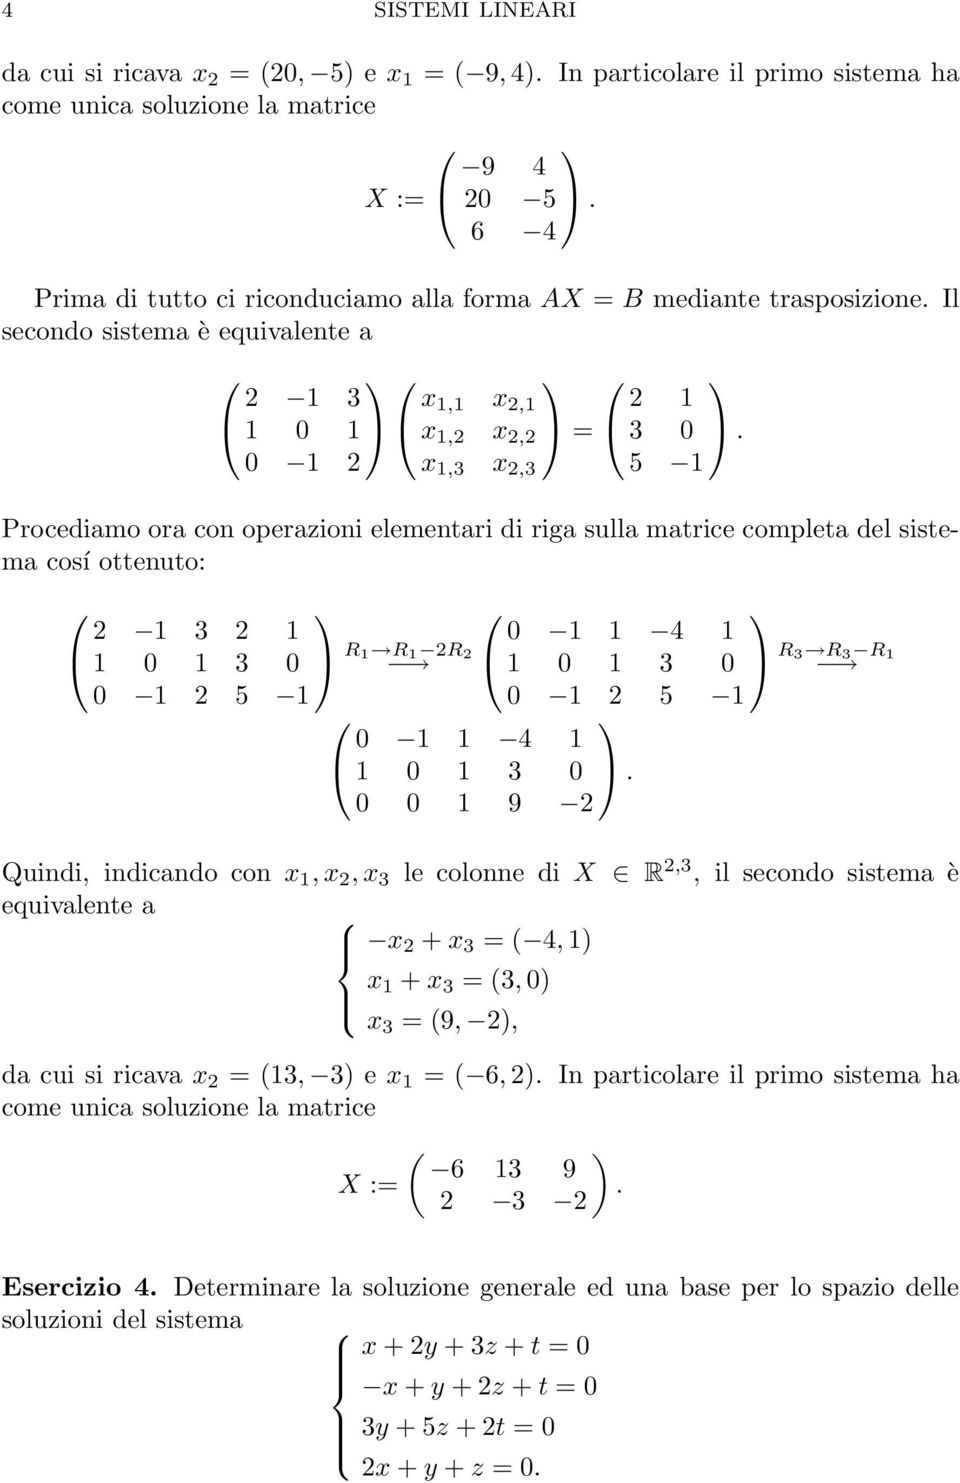 0 x,3 x,3 5 Procediamo ora con operazioni elementari di riga sulla matrice completa del sistema cosí ottenuto: 3 0 3 0 R R R 0 5 0 4 0 3 0 0 5 0 4 0 3 0.